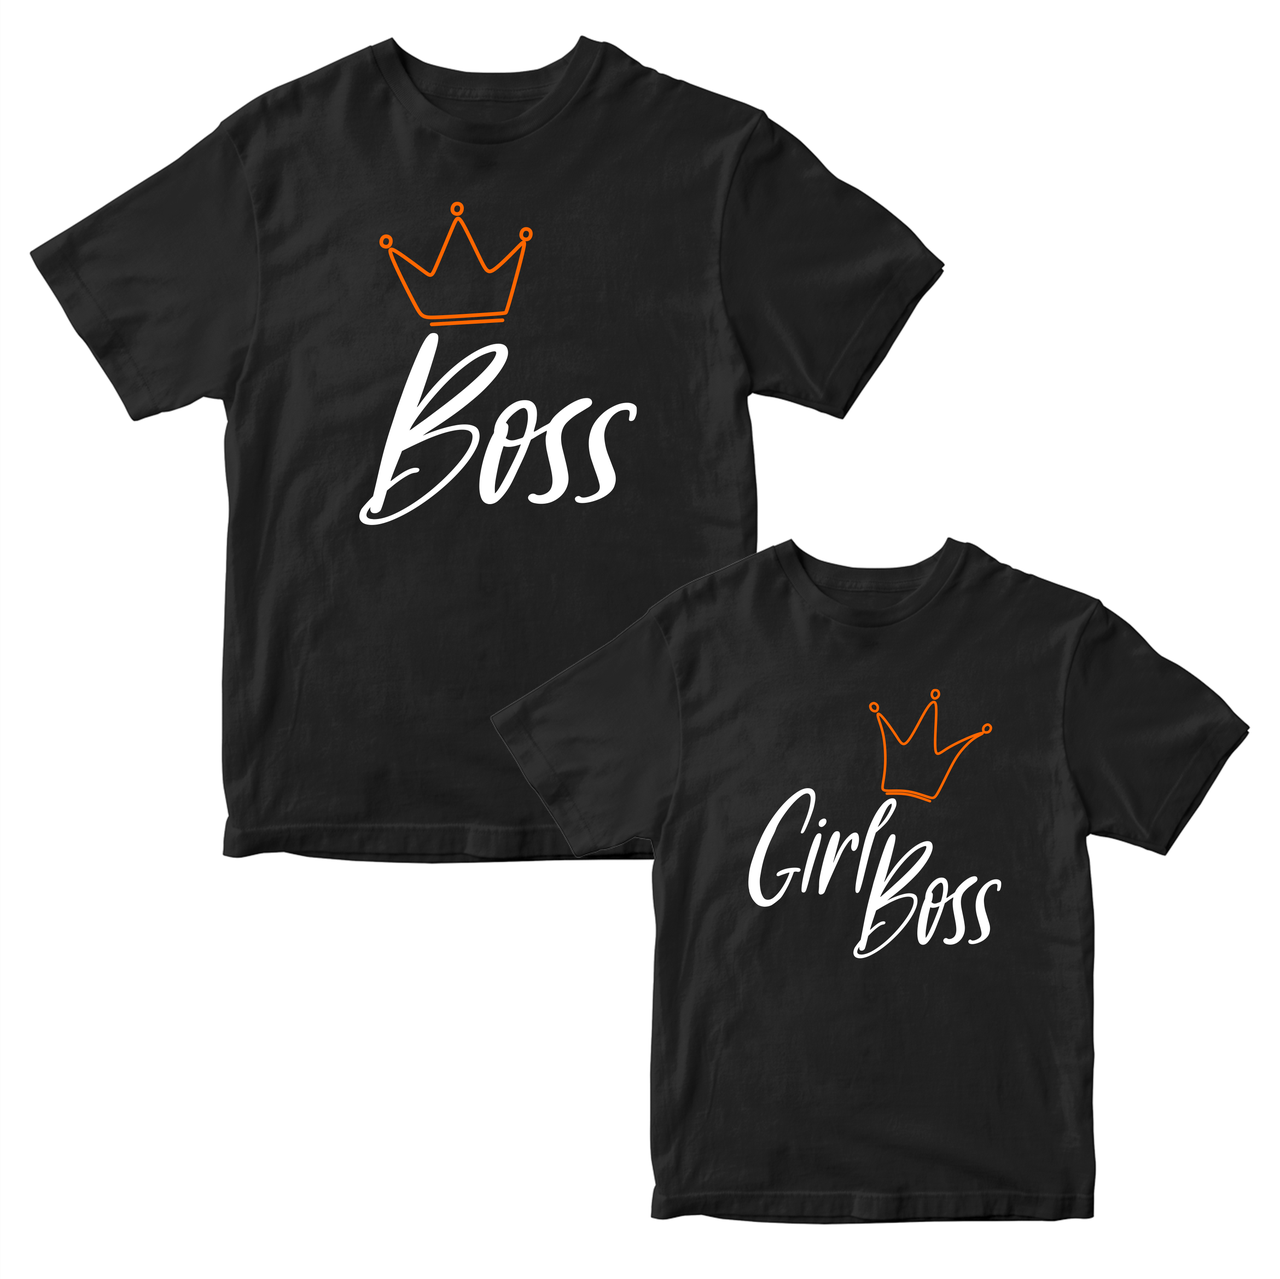 Парні чорні футболки для закоханих із принтом "Boss Girl Boss. Бос Дівчина Боса" Push IT. Футболки парні